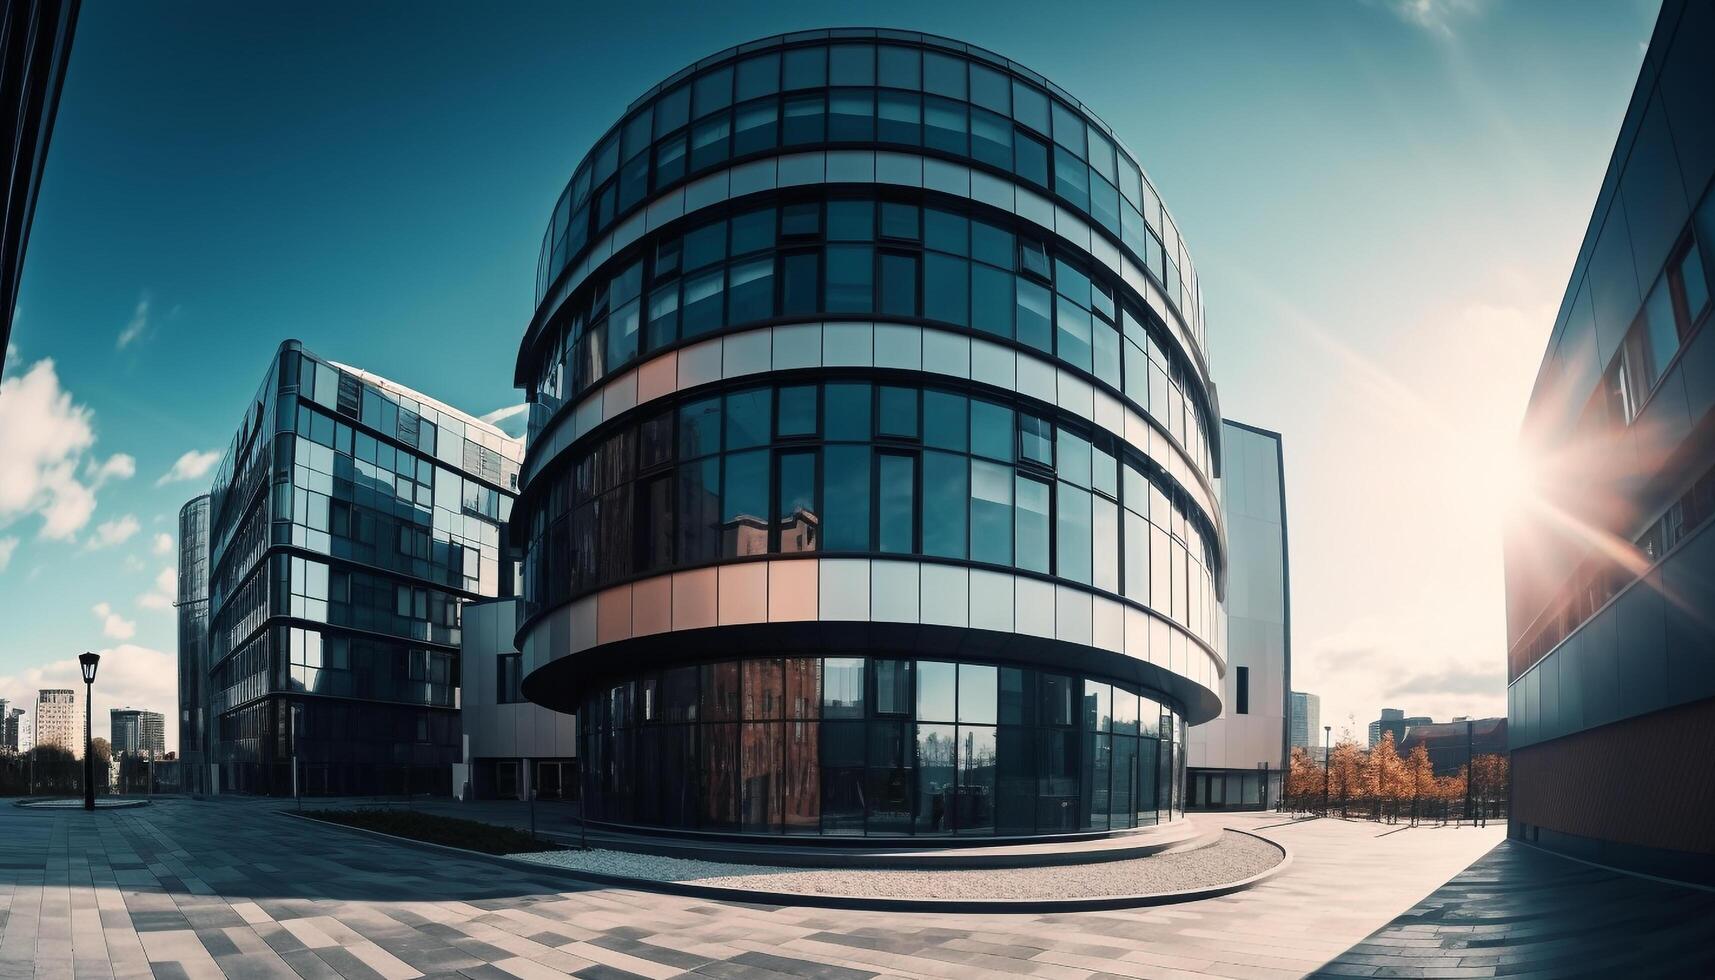 Modern skyscraper reflects blue cityscape in futuristic glass facade generated by AI photo